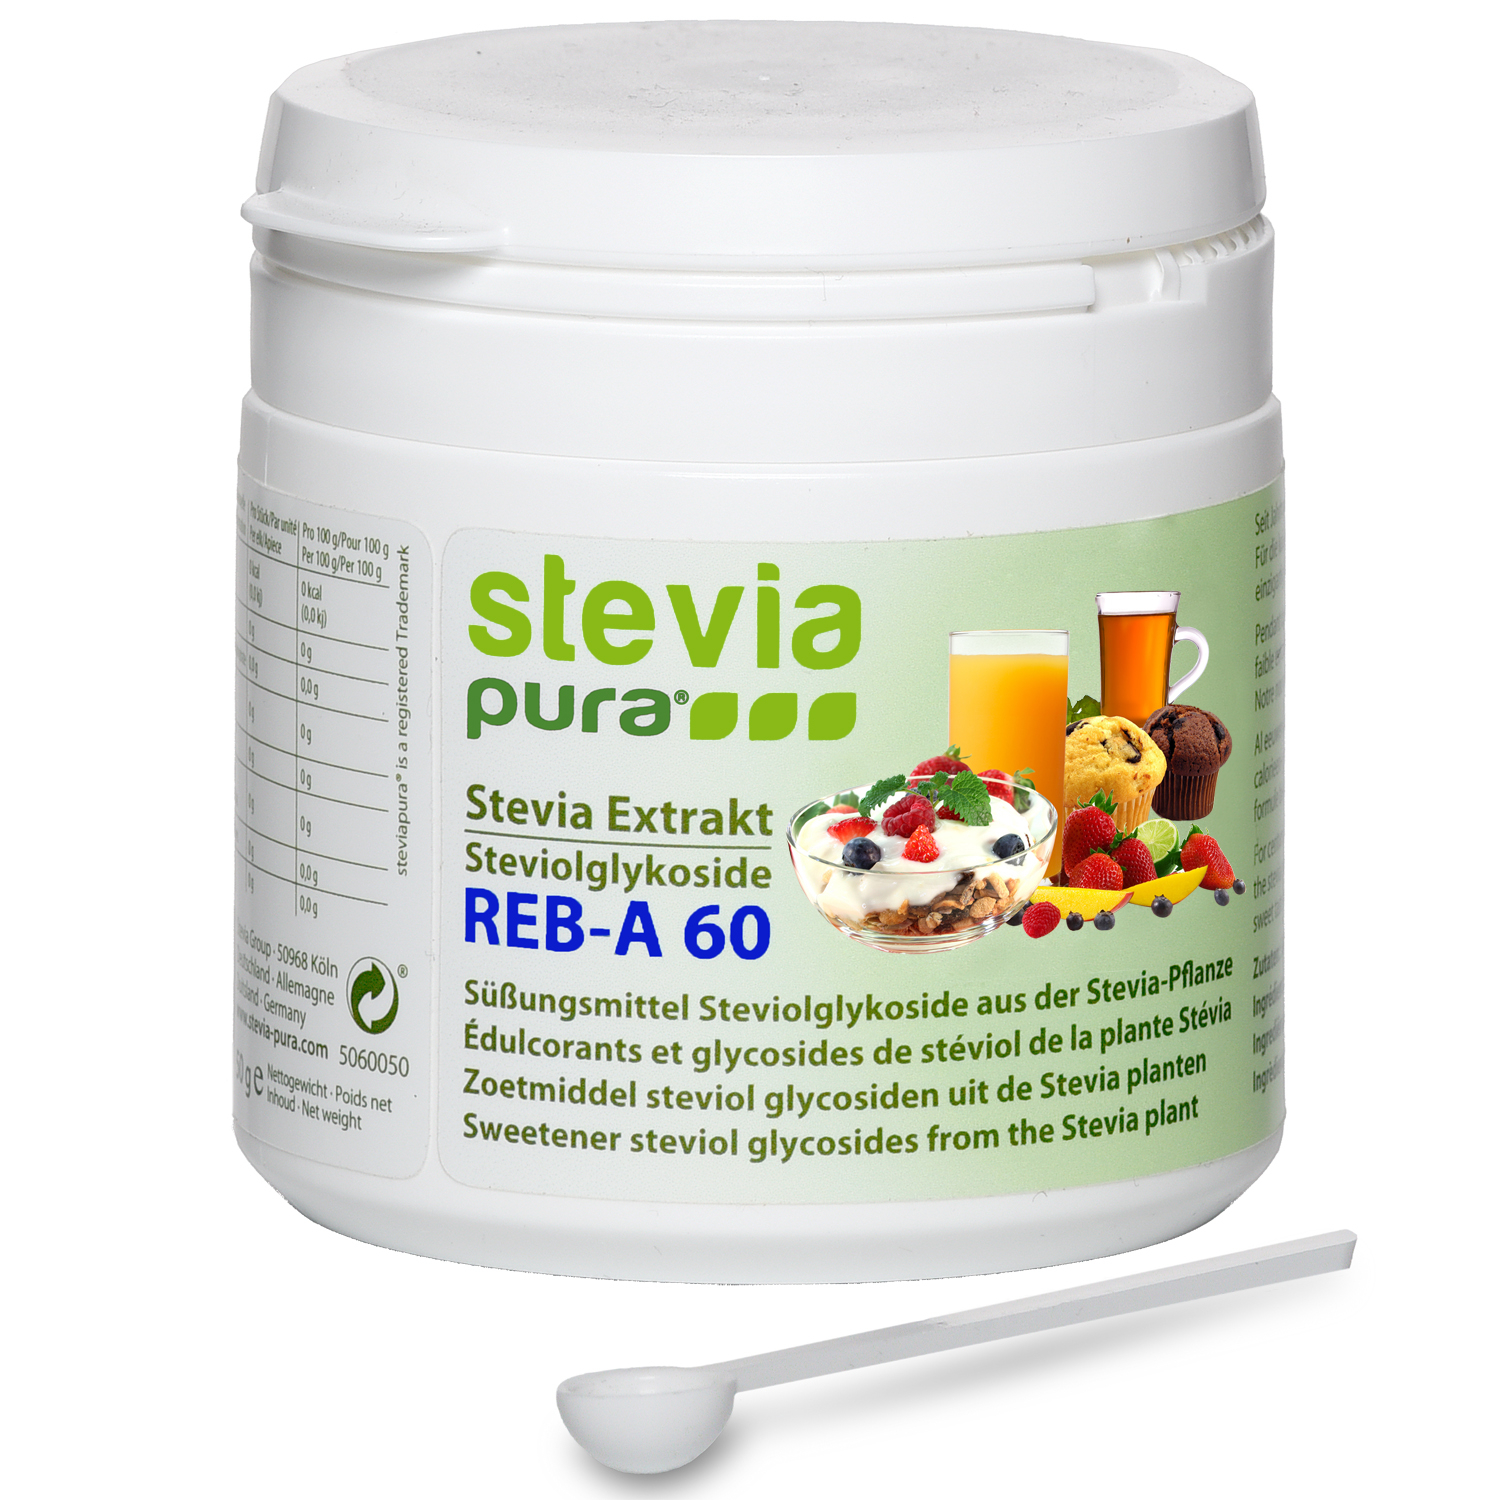 Comprar Extrato de Stevia em Pó (Stevioside) puro, branco